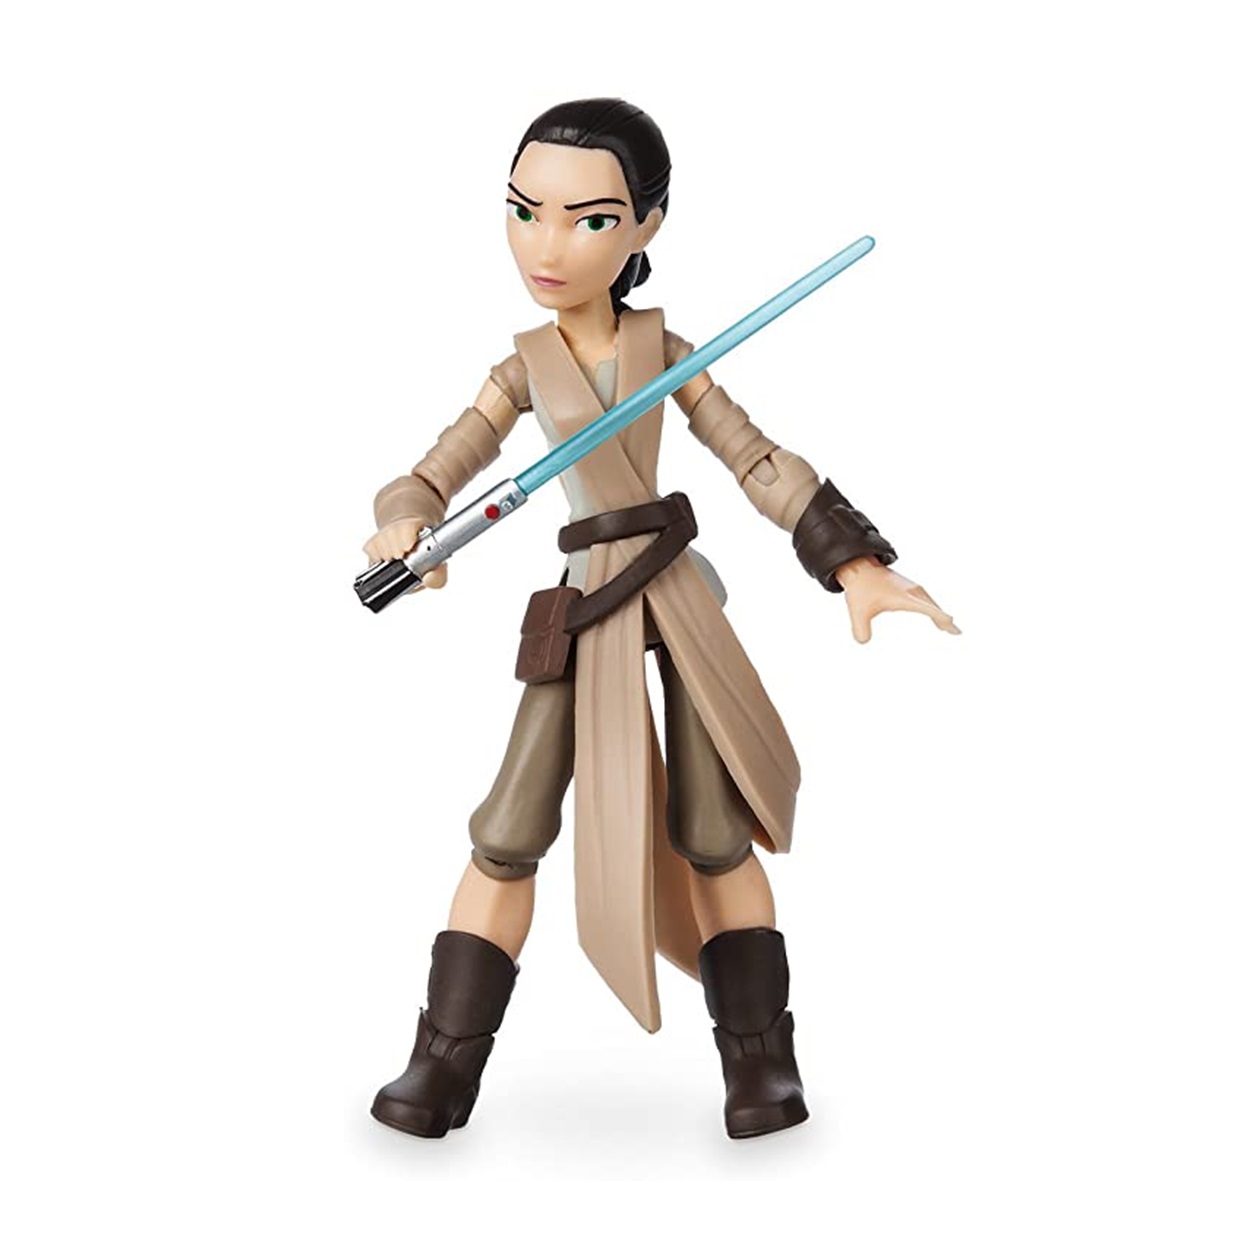 Rey #2 Figura Star Wars The Force Awakens Disney Toybox